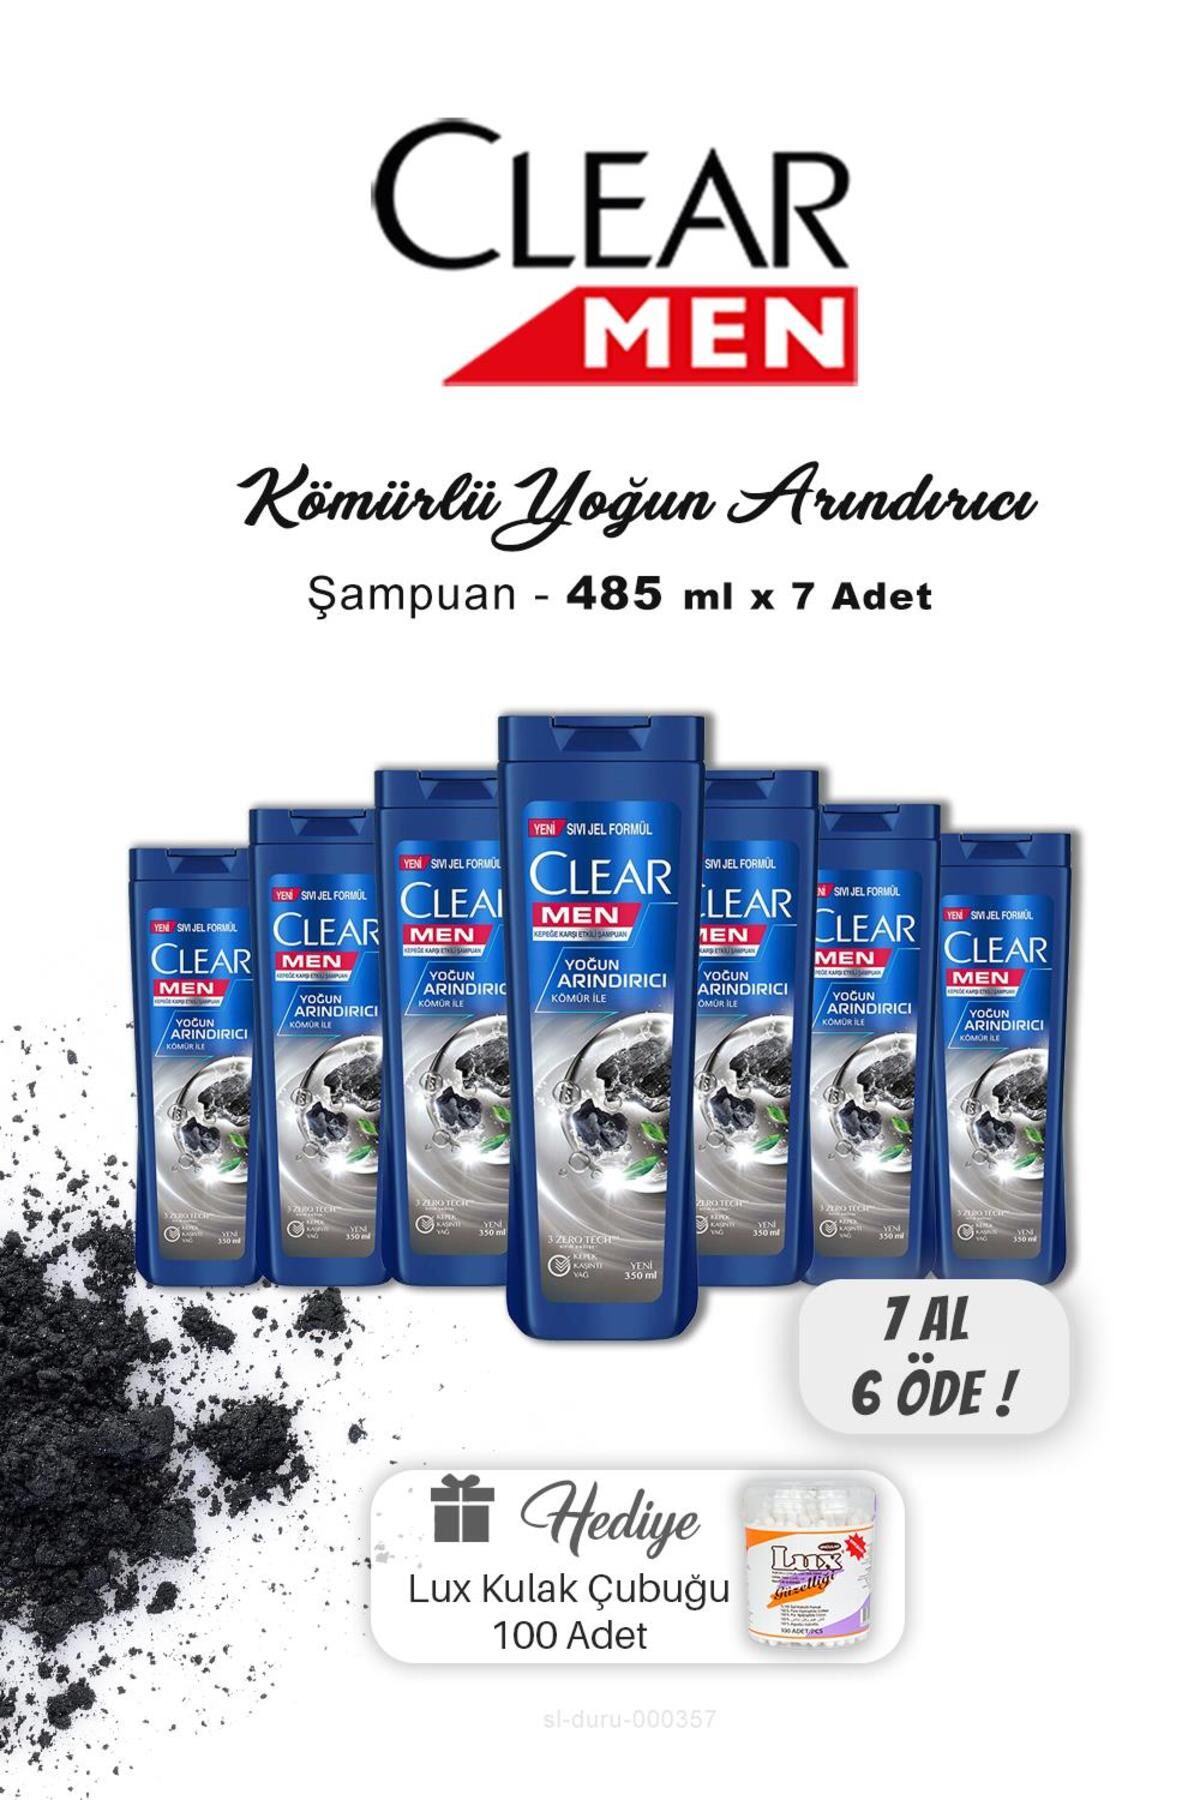 Clear 7 AL 6 ÖDE Clear Men Kepeğe Karşı Etkili Şampuan 350ml, Kulak Çubuğu Hediyeli